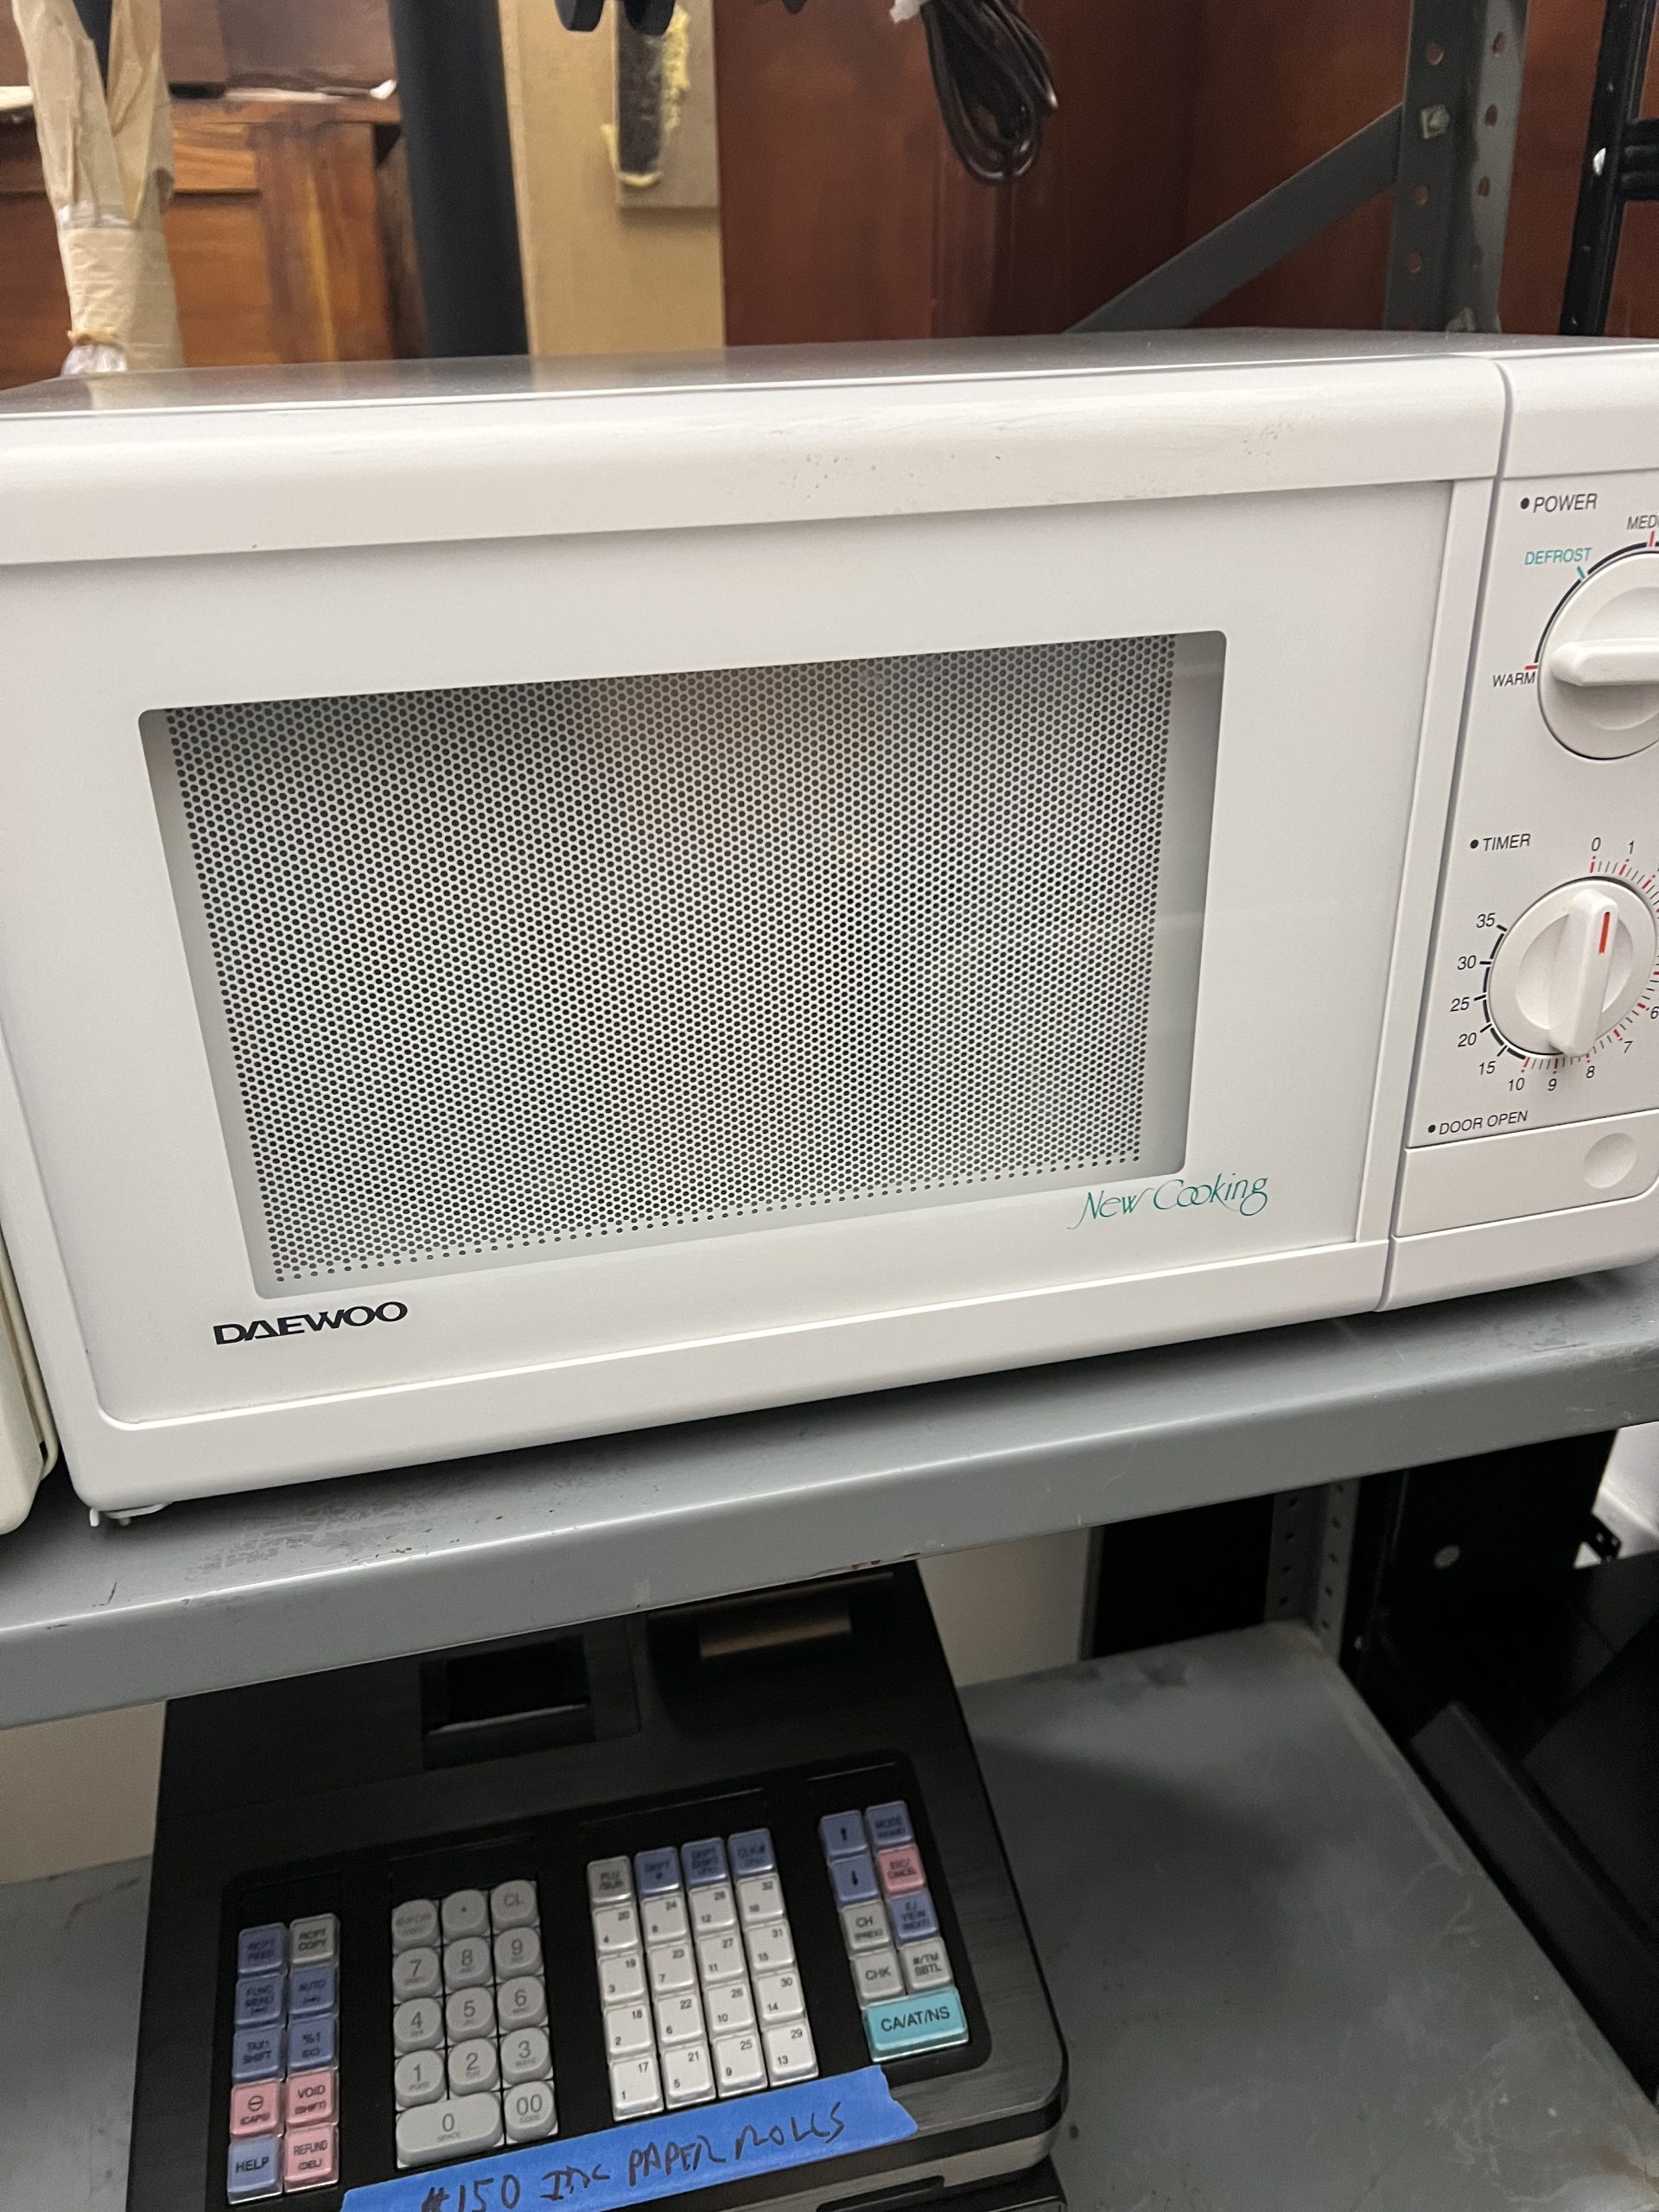 Daewoo Microwave-image